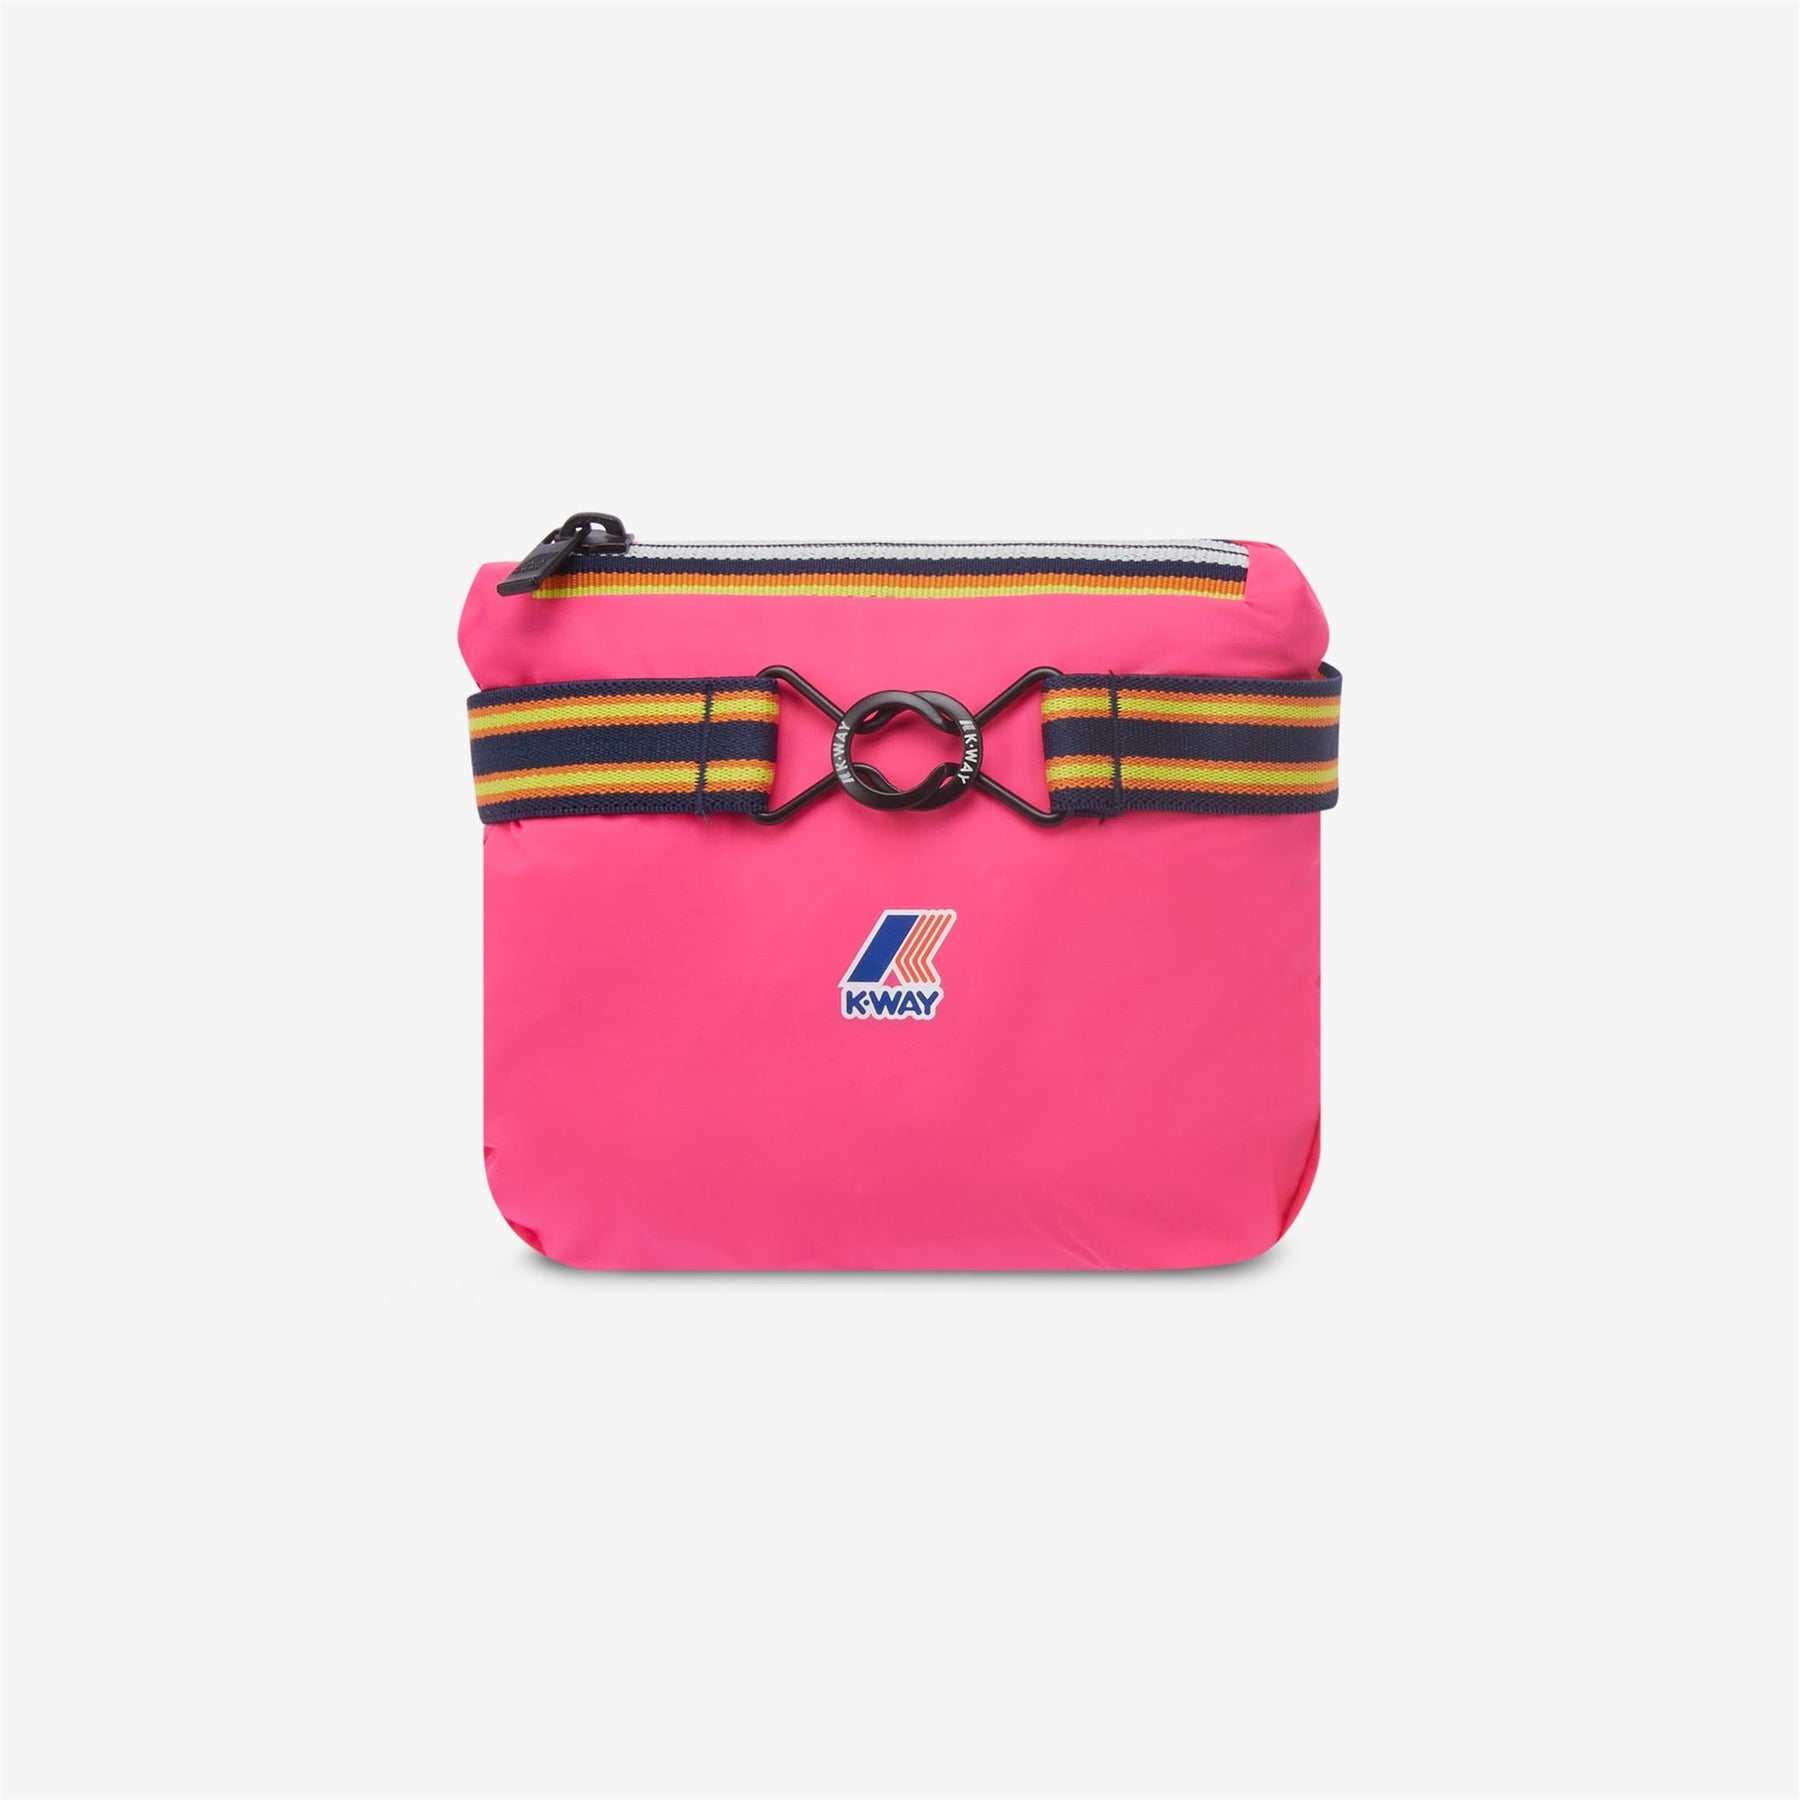 Claude - Kids Packable Full Zip Rain Jacket in Pink Intense